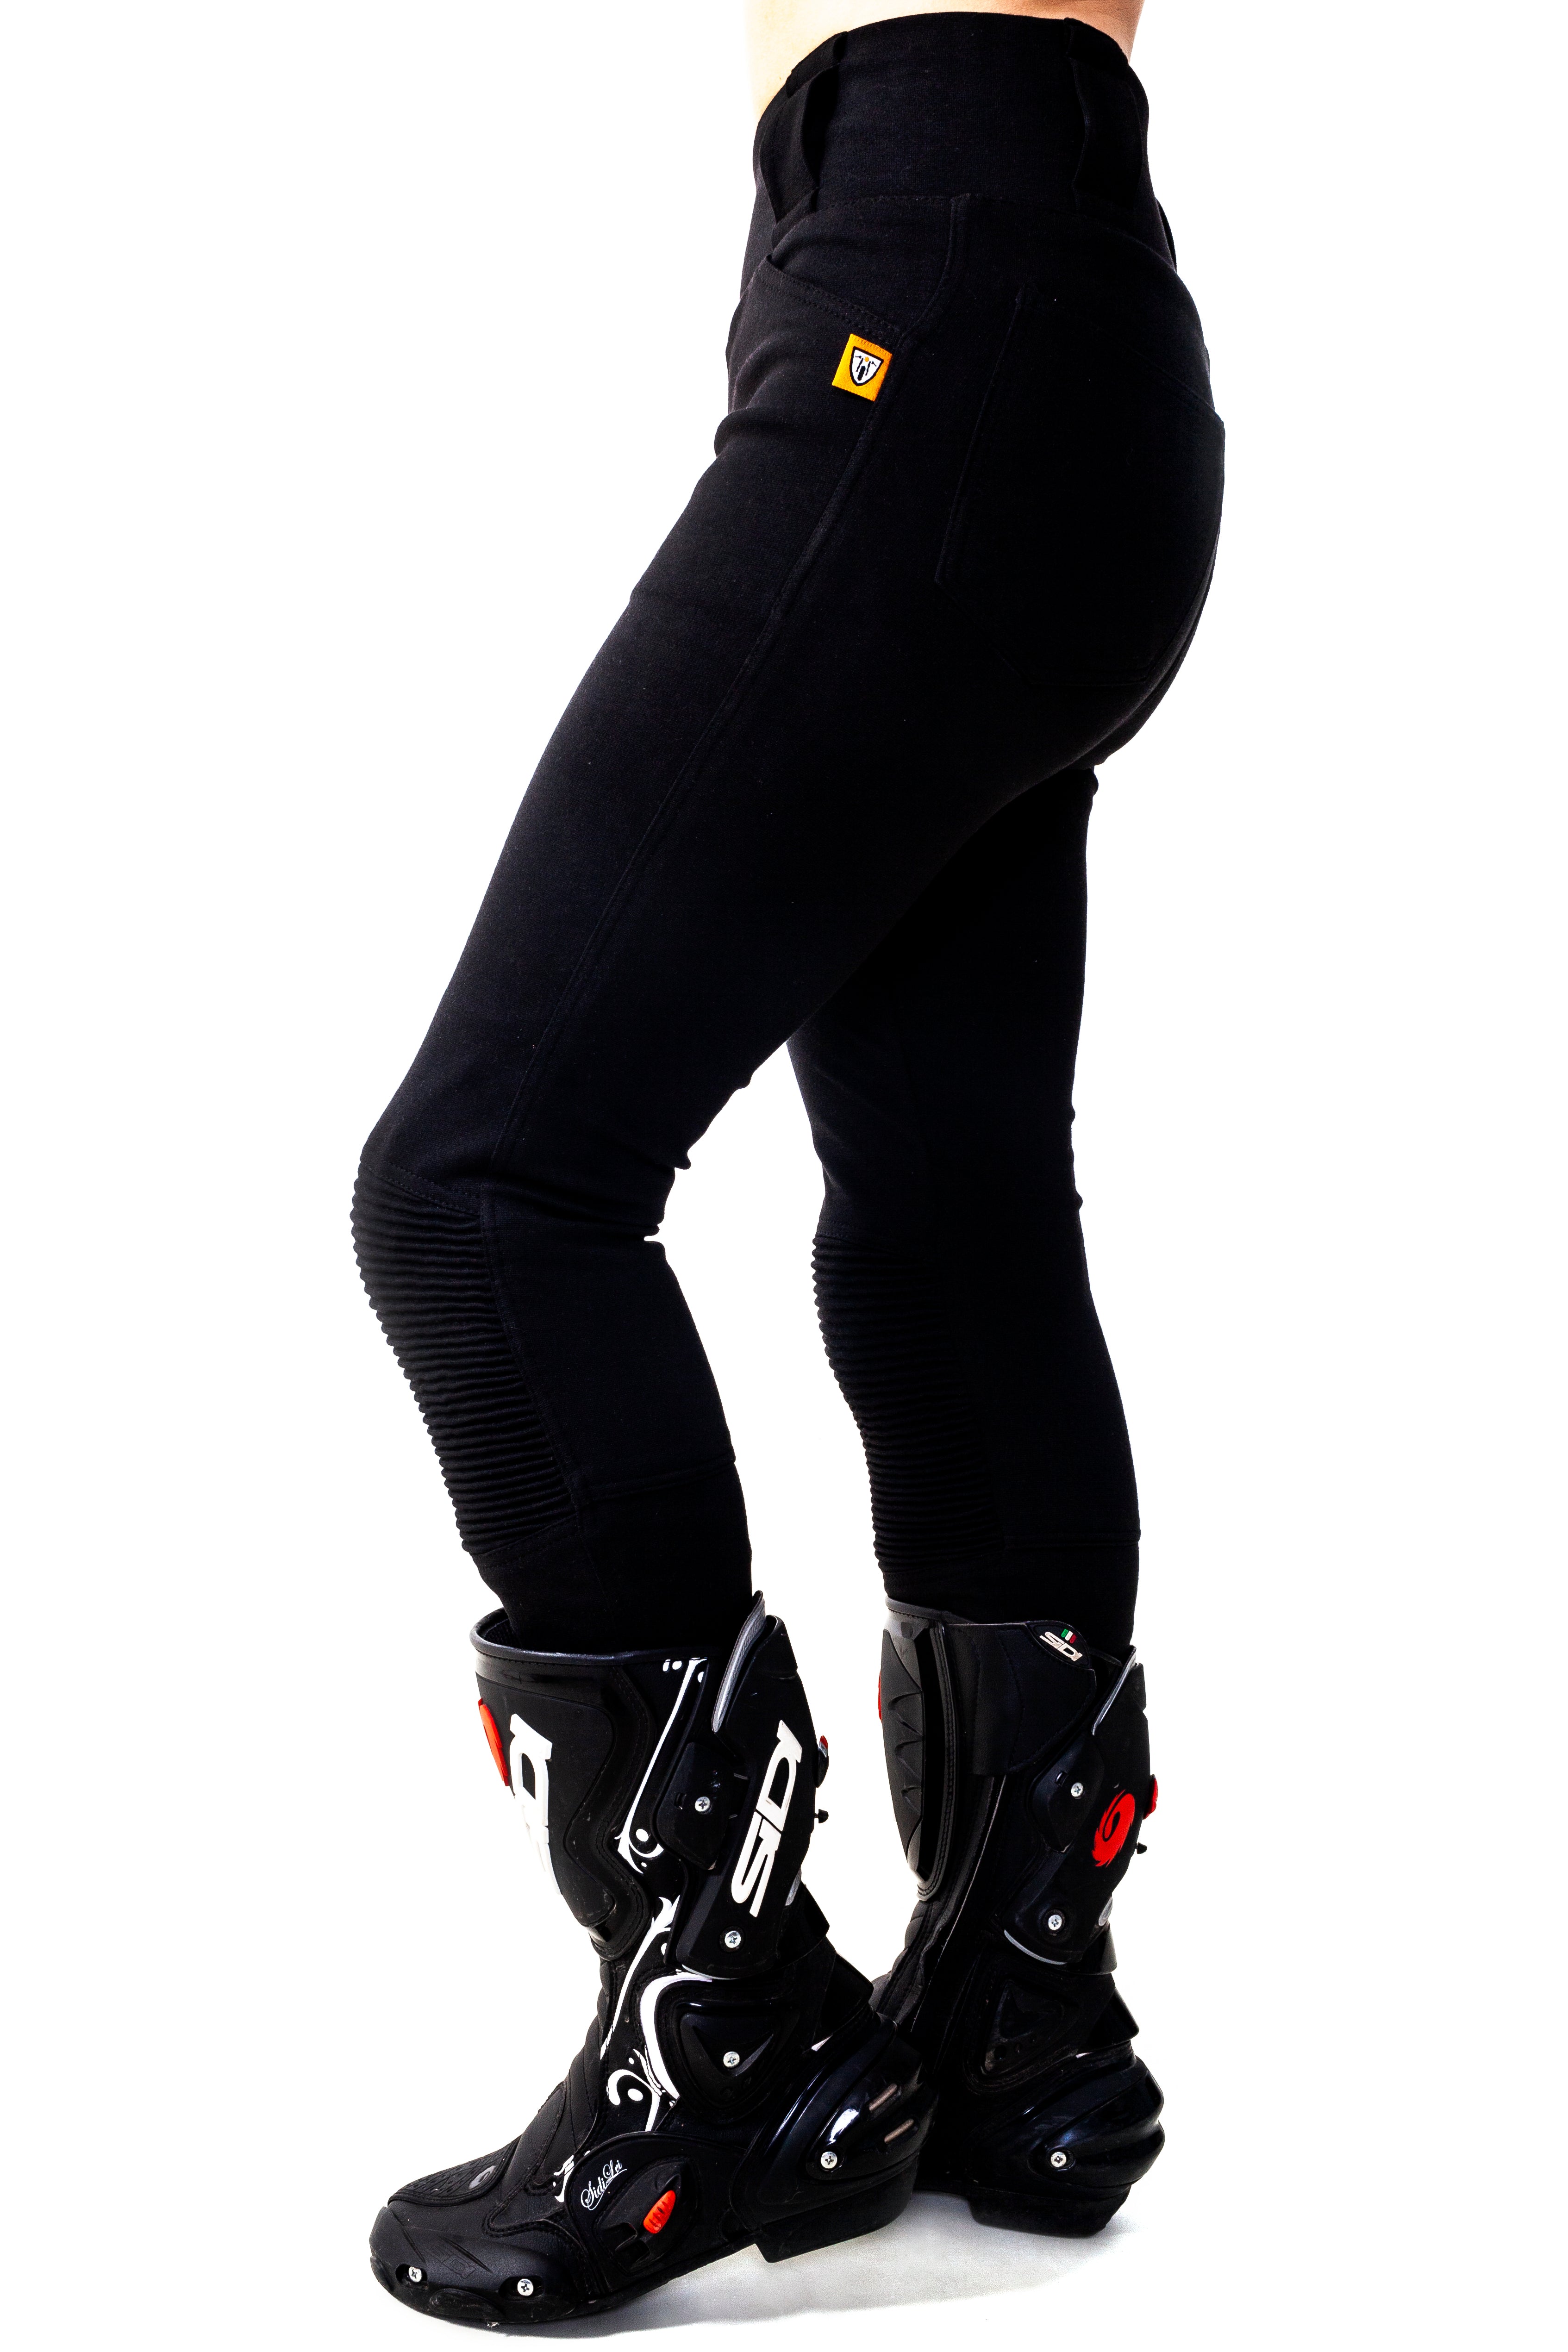 Ladies Motorcycle Ribbed Knee Design Leggings from Moto Girl